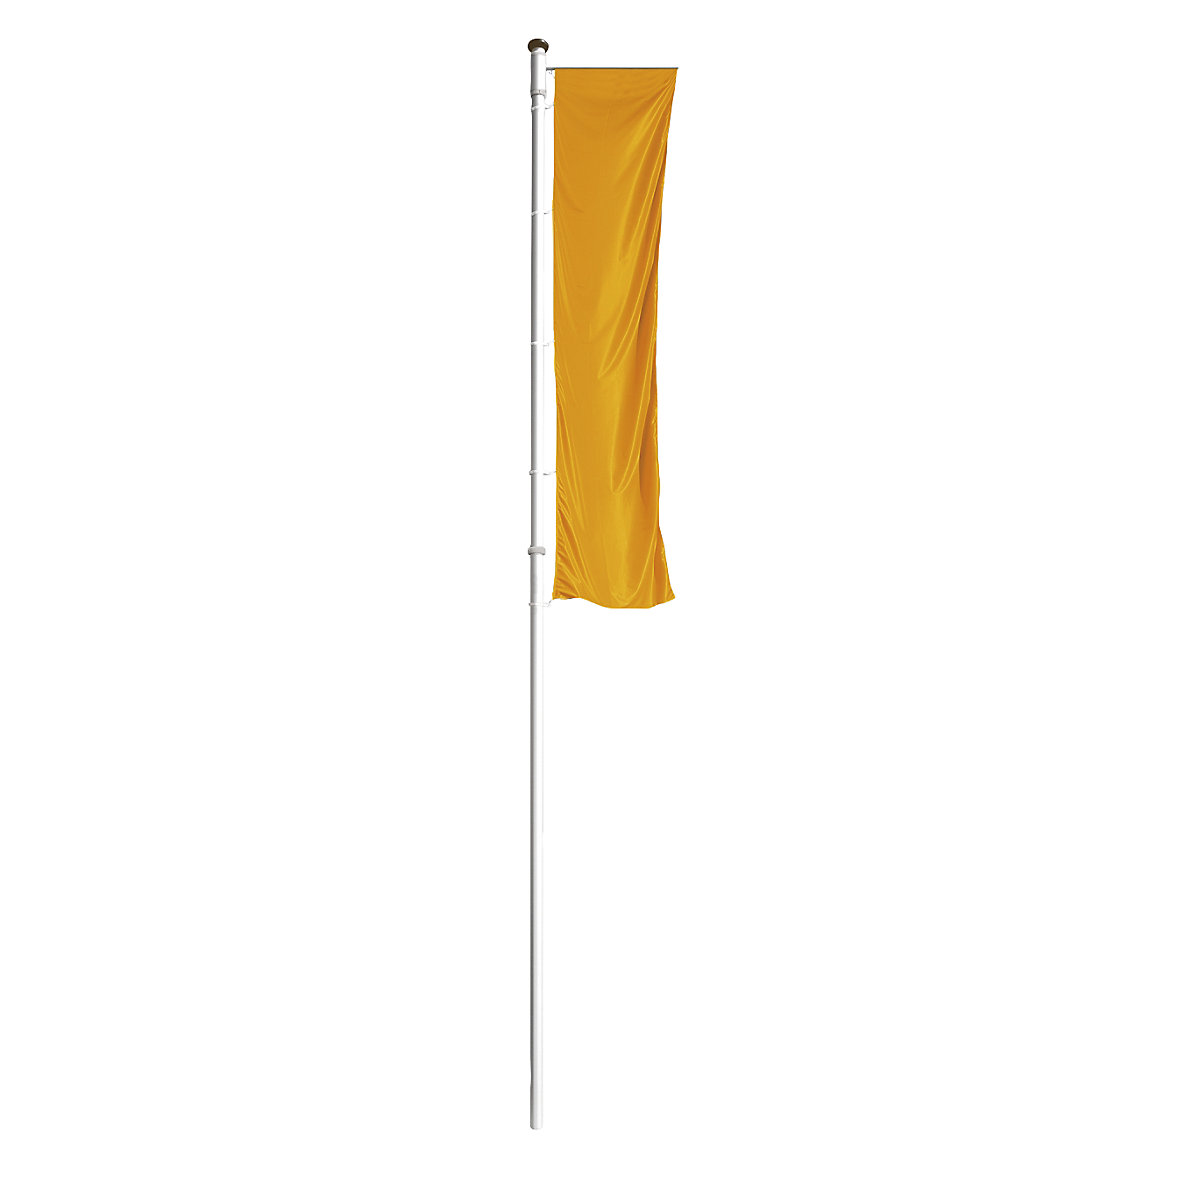 Hliníkový vlajkový stožár PRESTIGE – Mannus